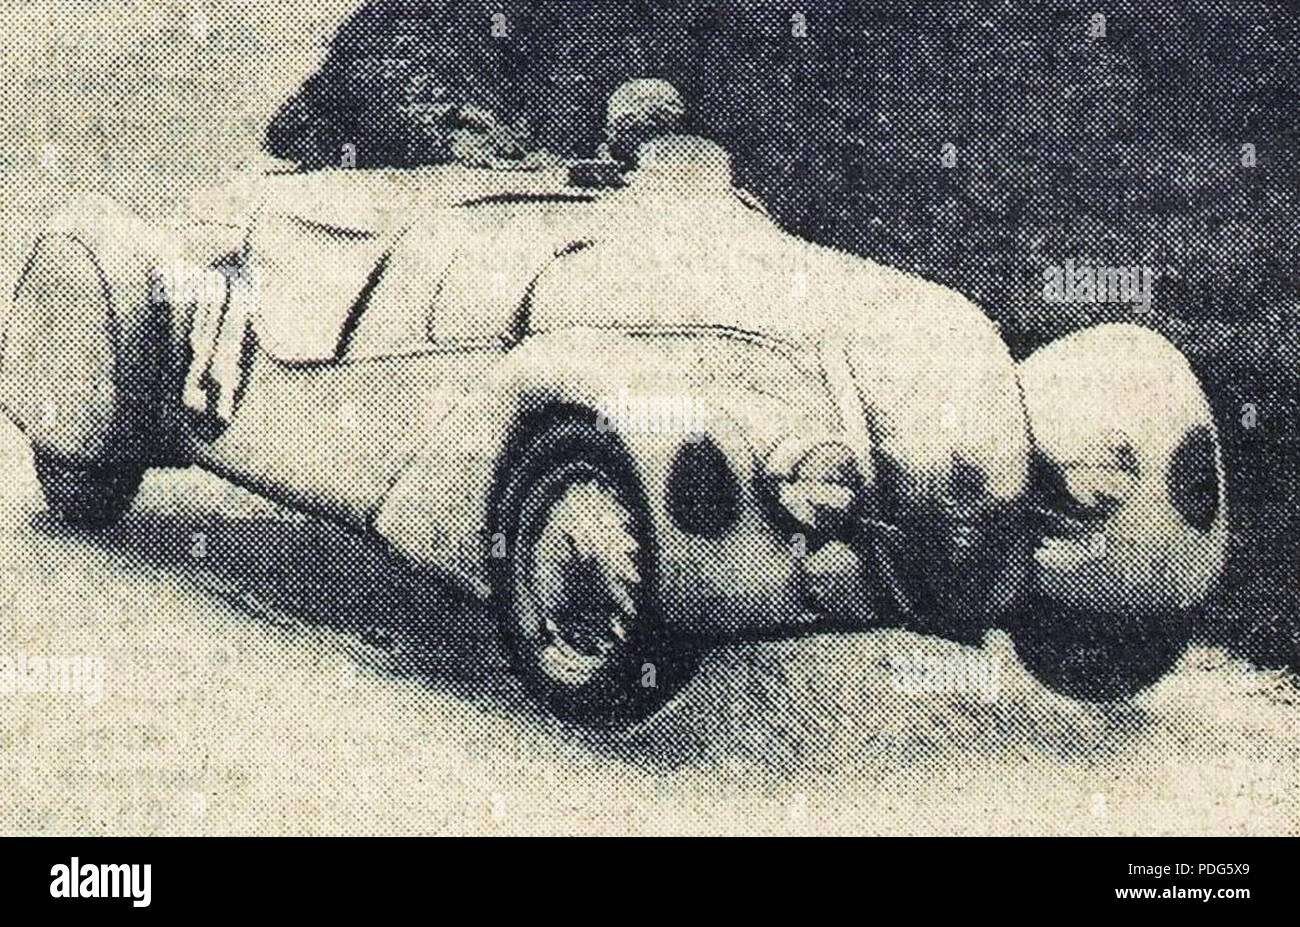 193 La Peugeot 402 DS Darl’mat 2L. de Contet et de Cortanze, 5e des 24 Heures du Mans 1938 Stock Photo